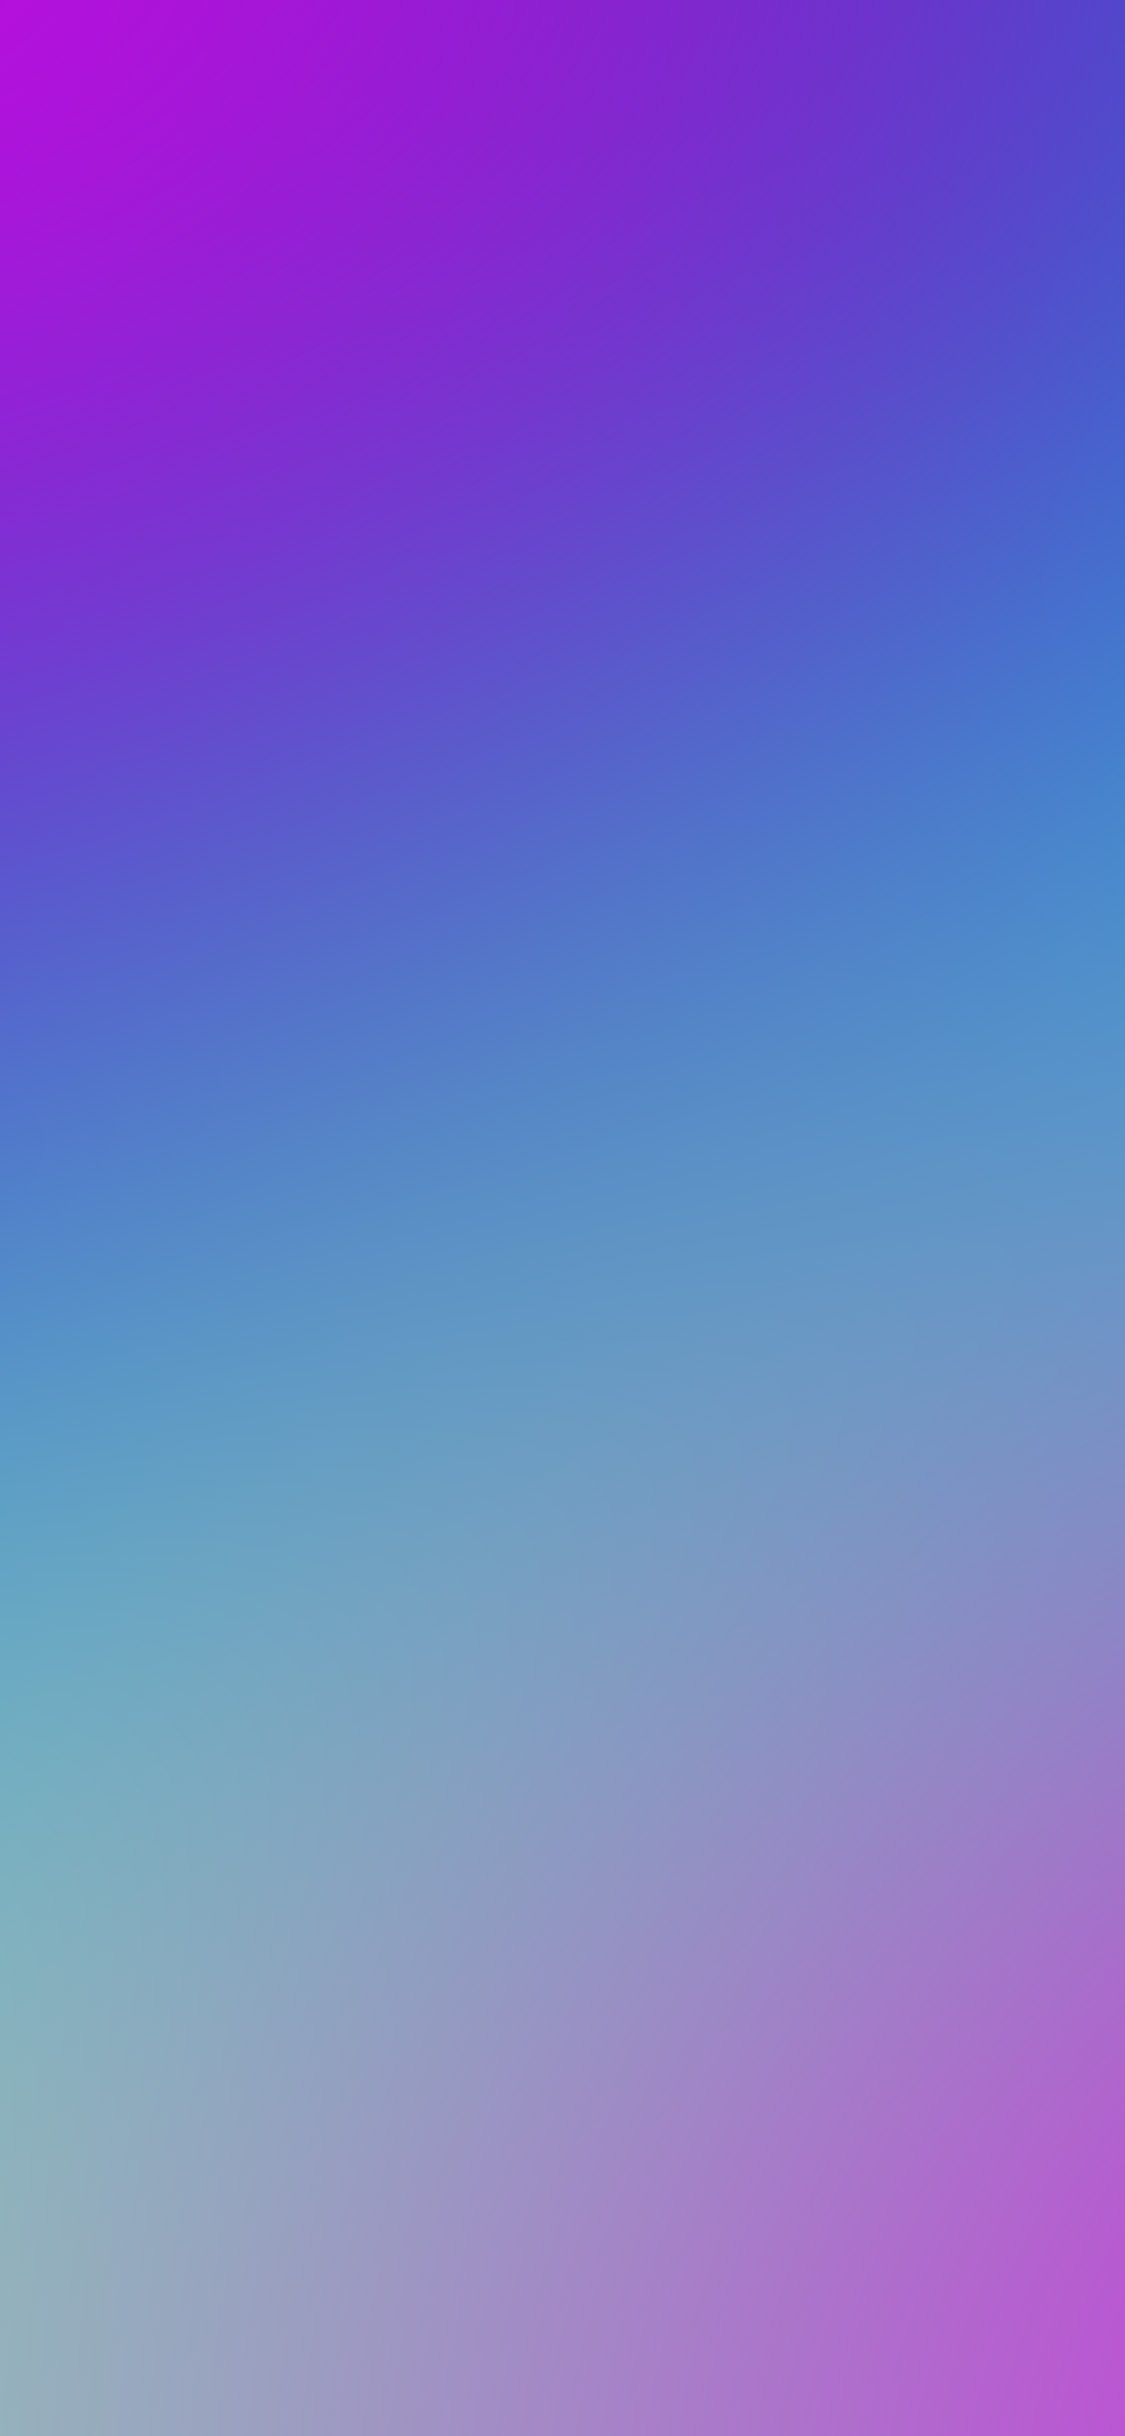 最新 Iphone 紫色壁紙